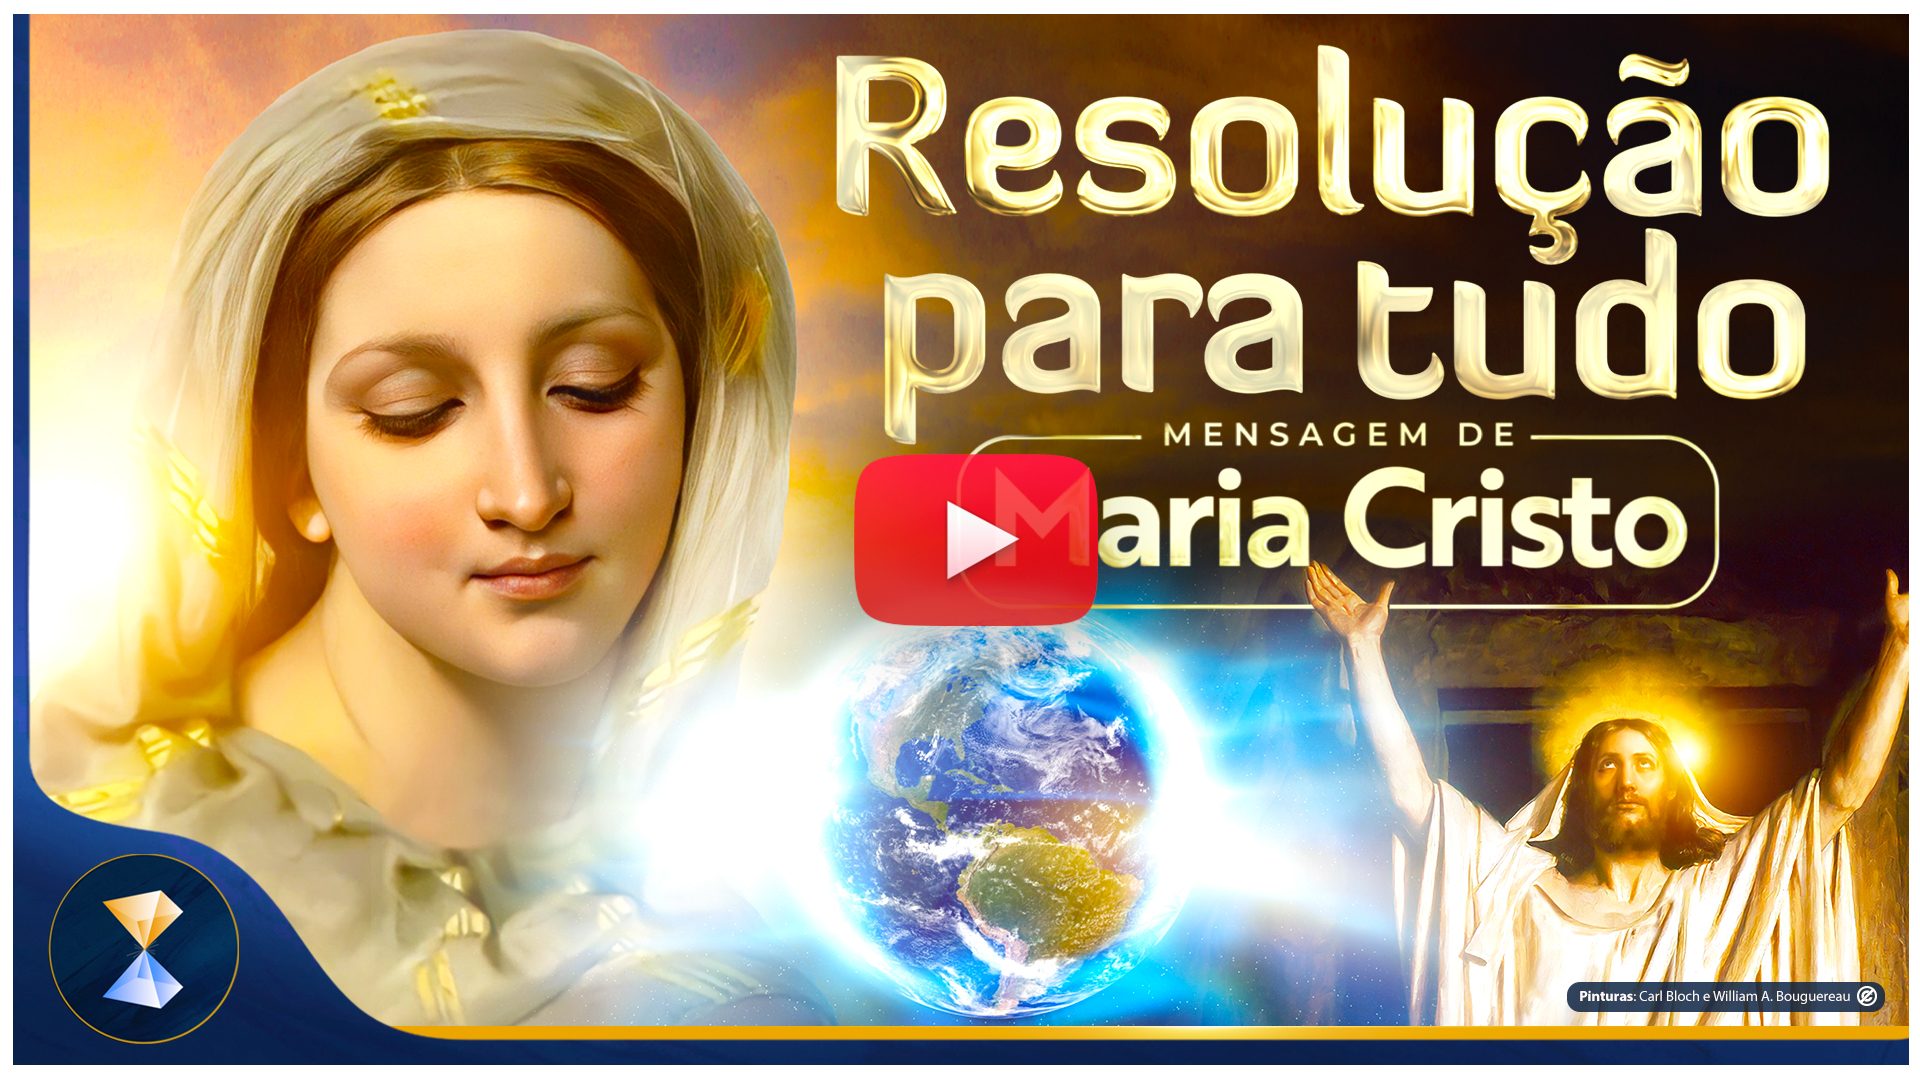 Resolução para tudo – Mensagem de Maria Cristo